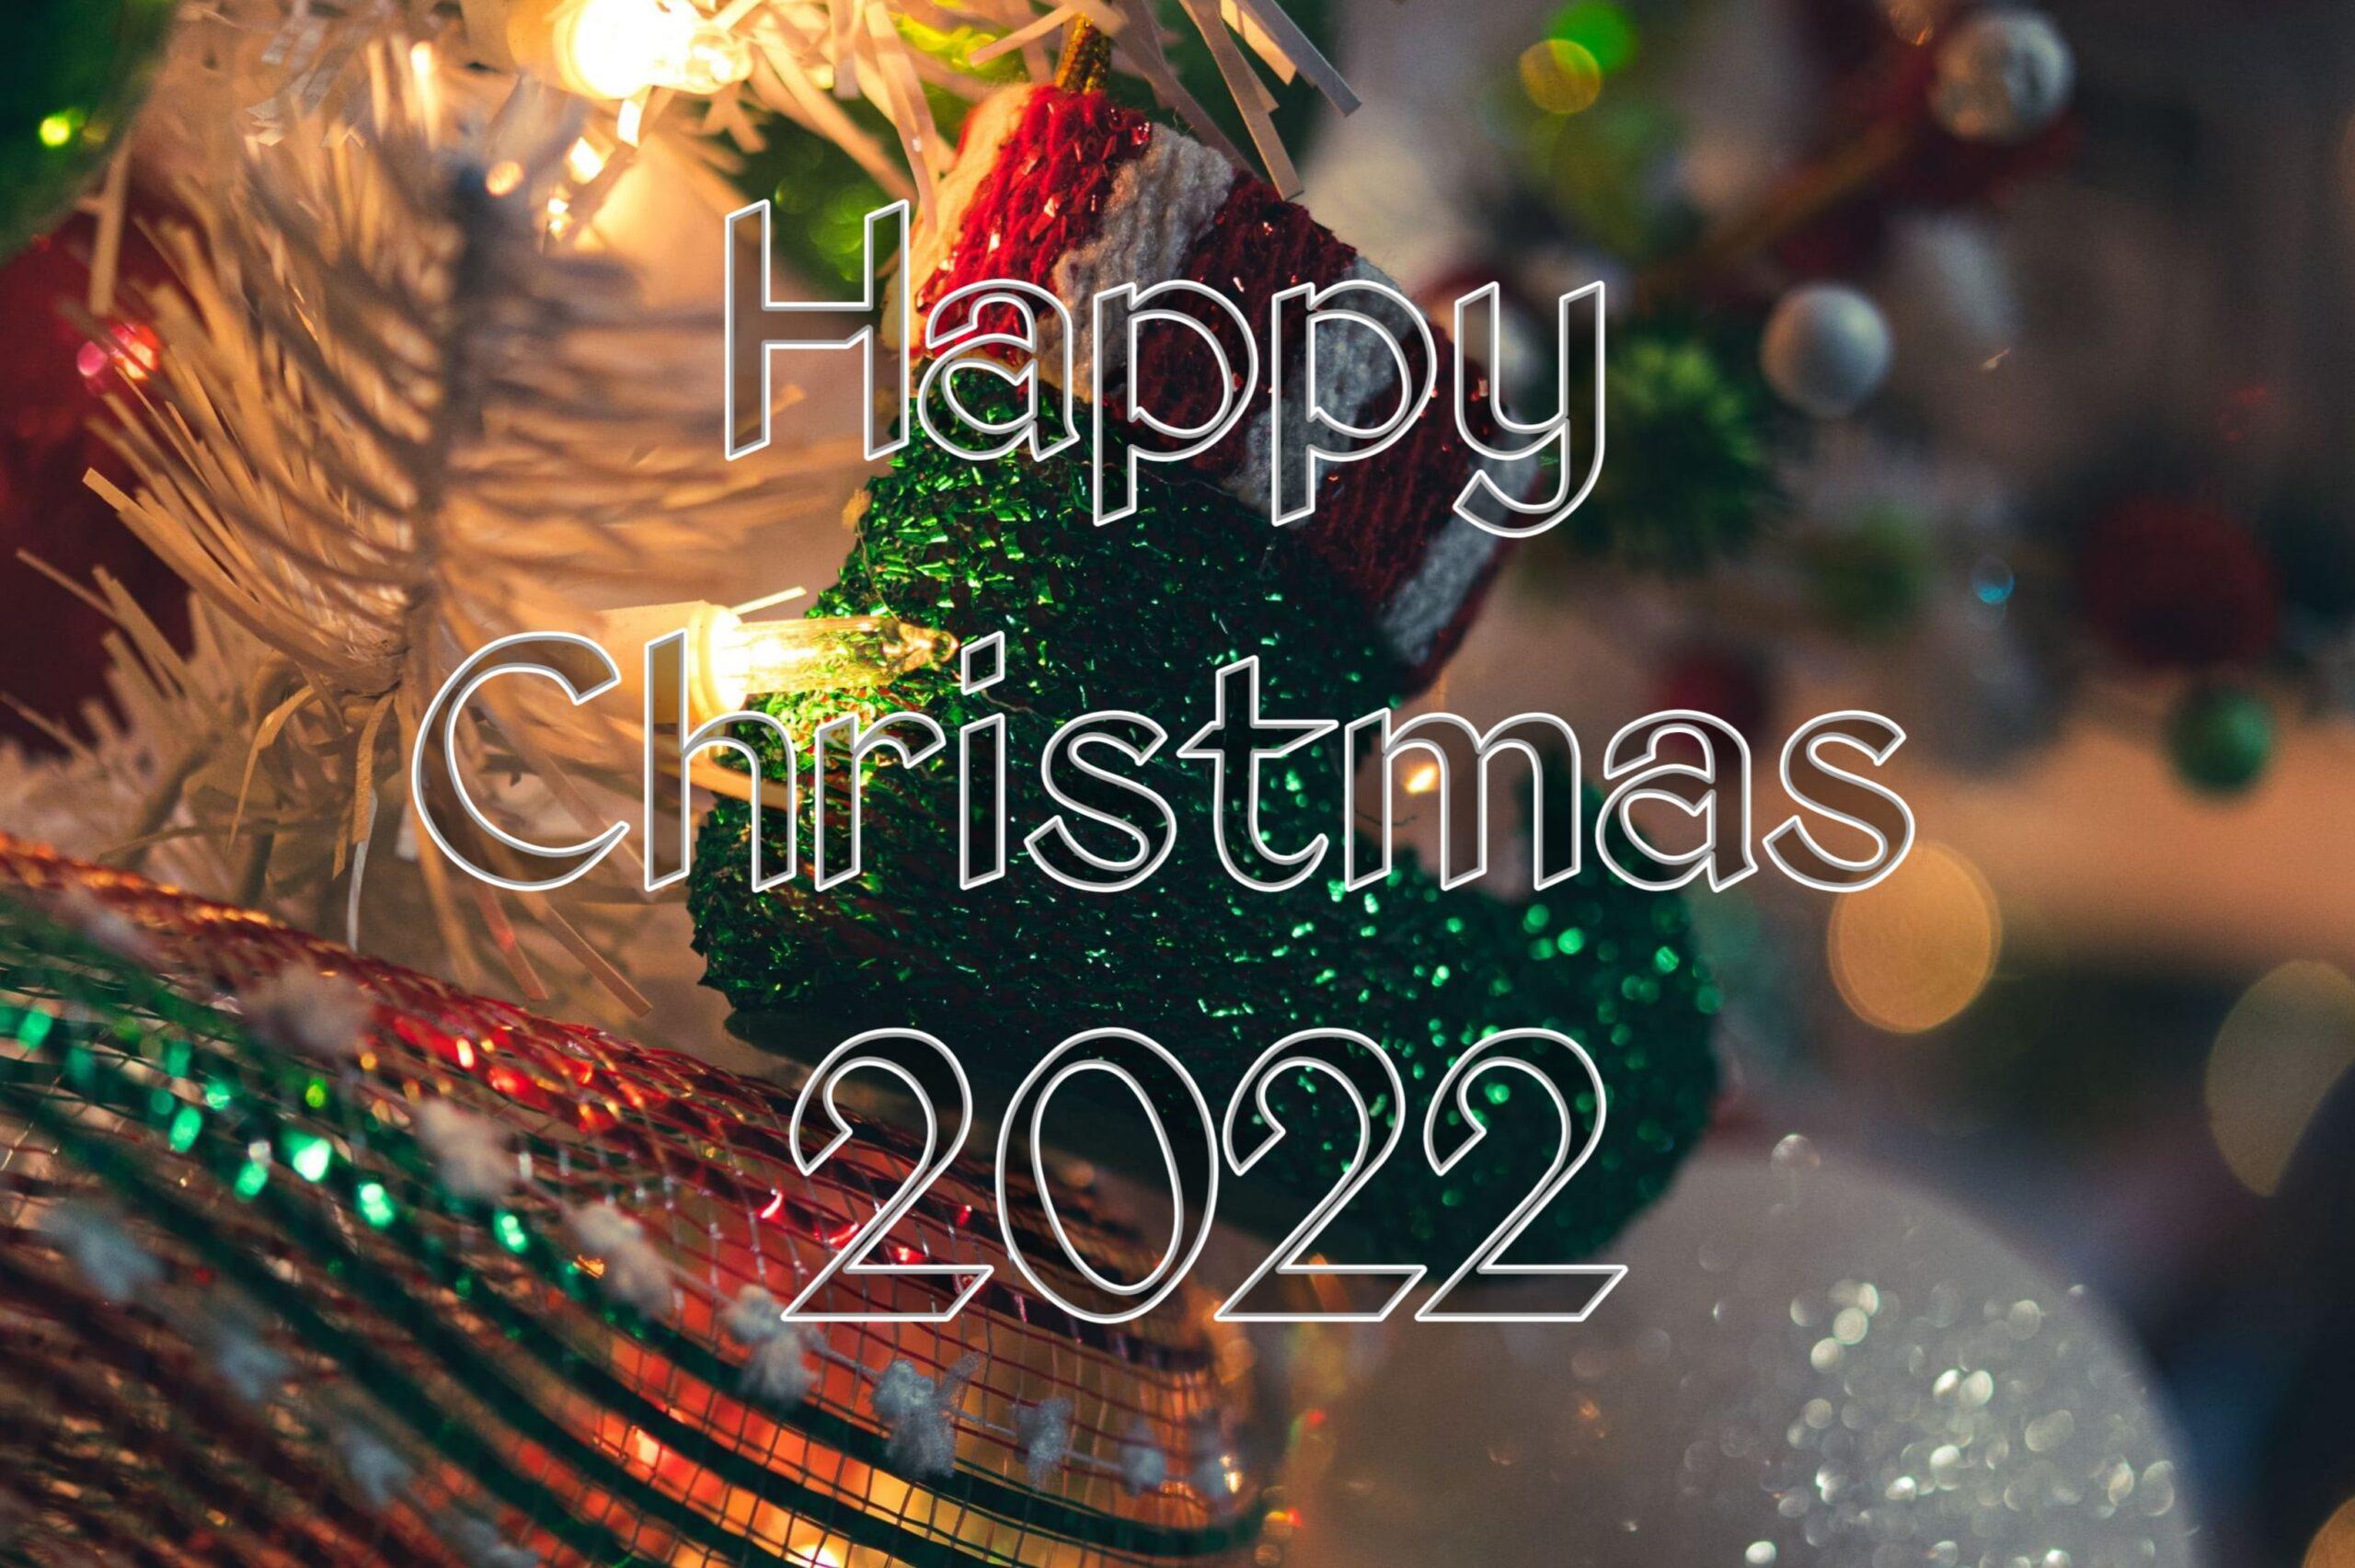 Hình nền Merry Christmas 2022 sẽ đưa bạn vào không gian tràn đầy niềm vui và sự mới mẻ. Hãy để màn hình điện thoại hay máy tính của bạn trở nên sinh động và rực rỡ hơn với những hình ảnh đẹp mắt về mùa lễ hội sắp tới.